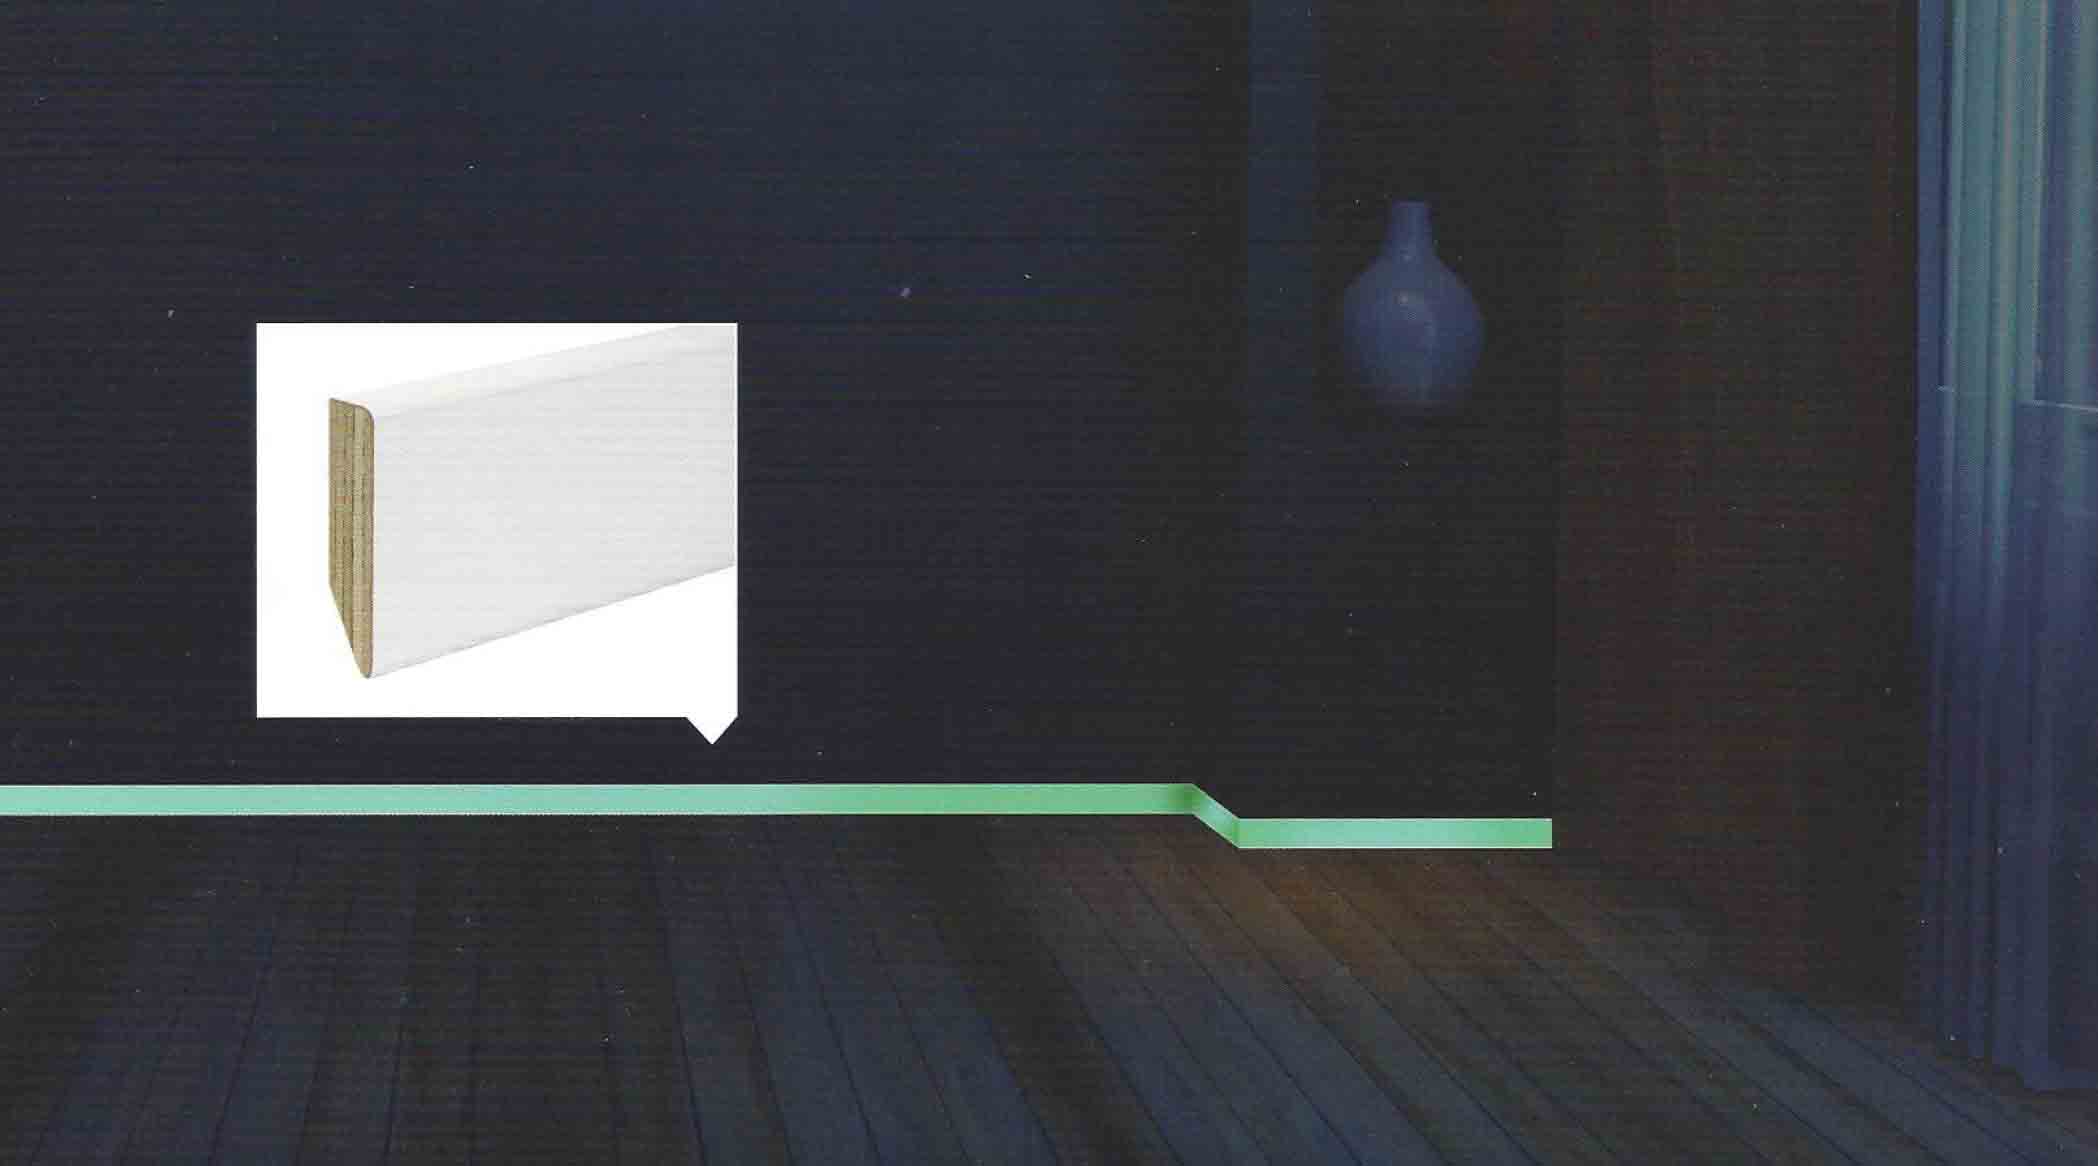 ML 24 di Battiscopa "luminoso" autoilluminante in legno taglio quadro laccato bianco 80x13 , si accende di notte per indicare il cammino, grande effetto scenico sulle scale.